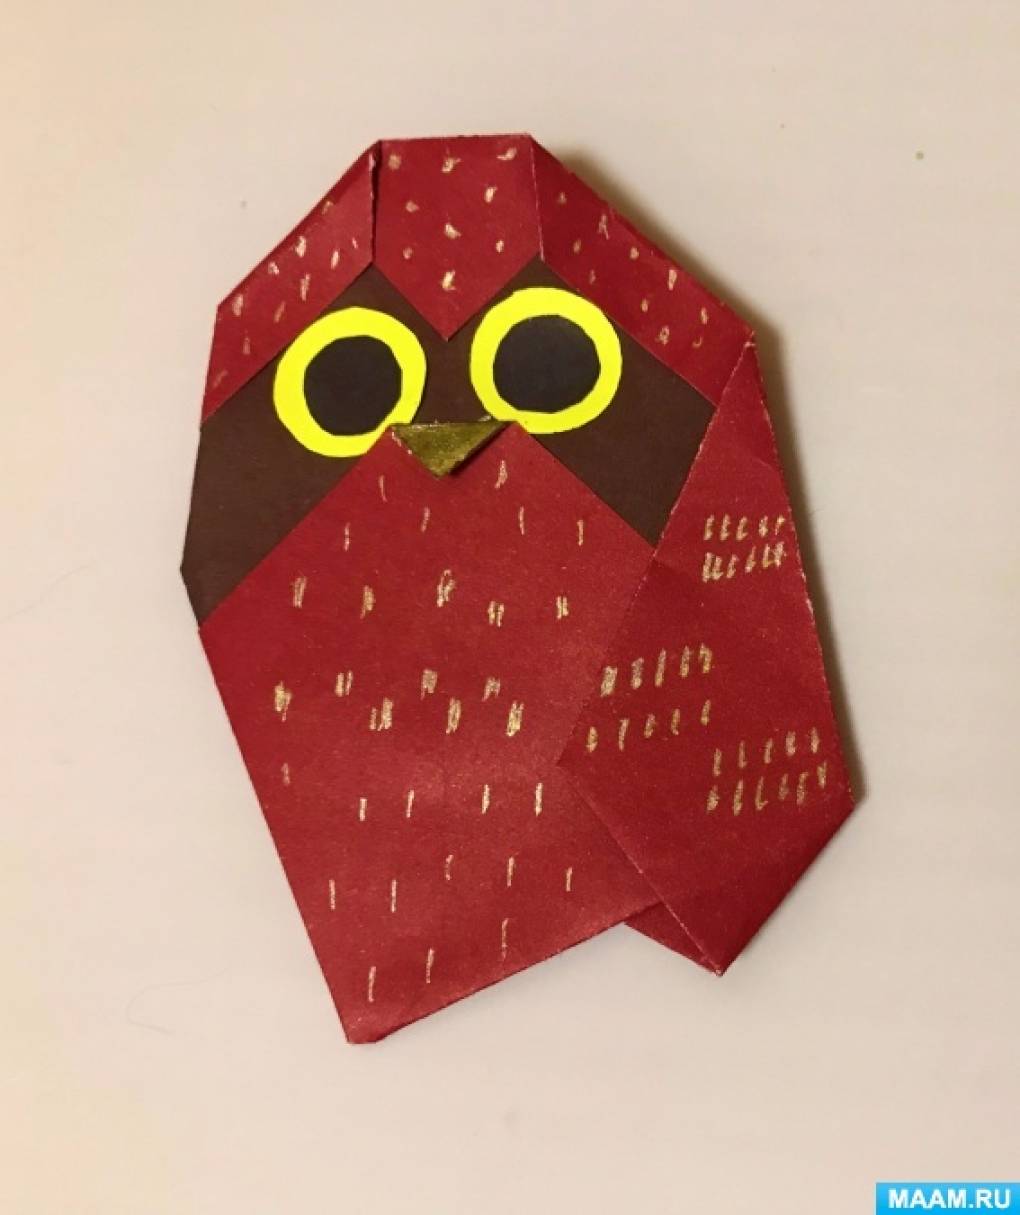 Мастер-класс по оригами из цветной бумаги «Сова» для старших дошкольников